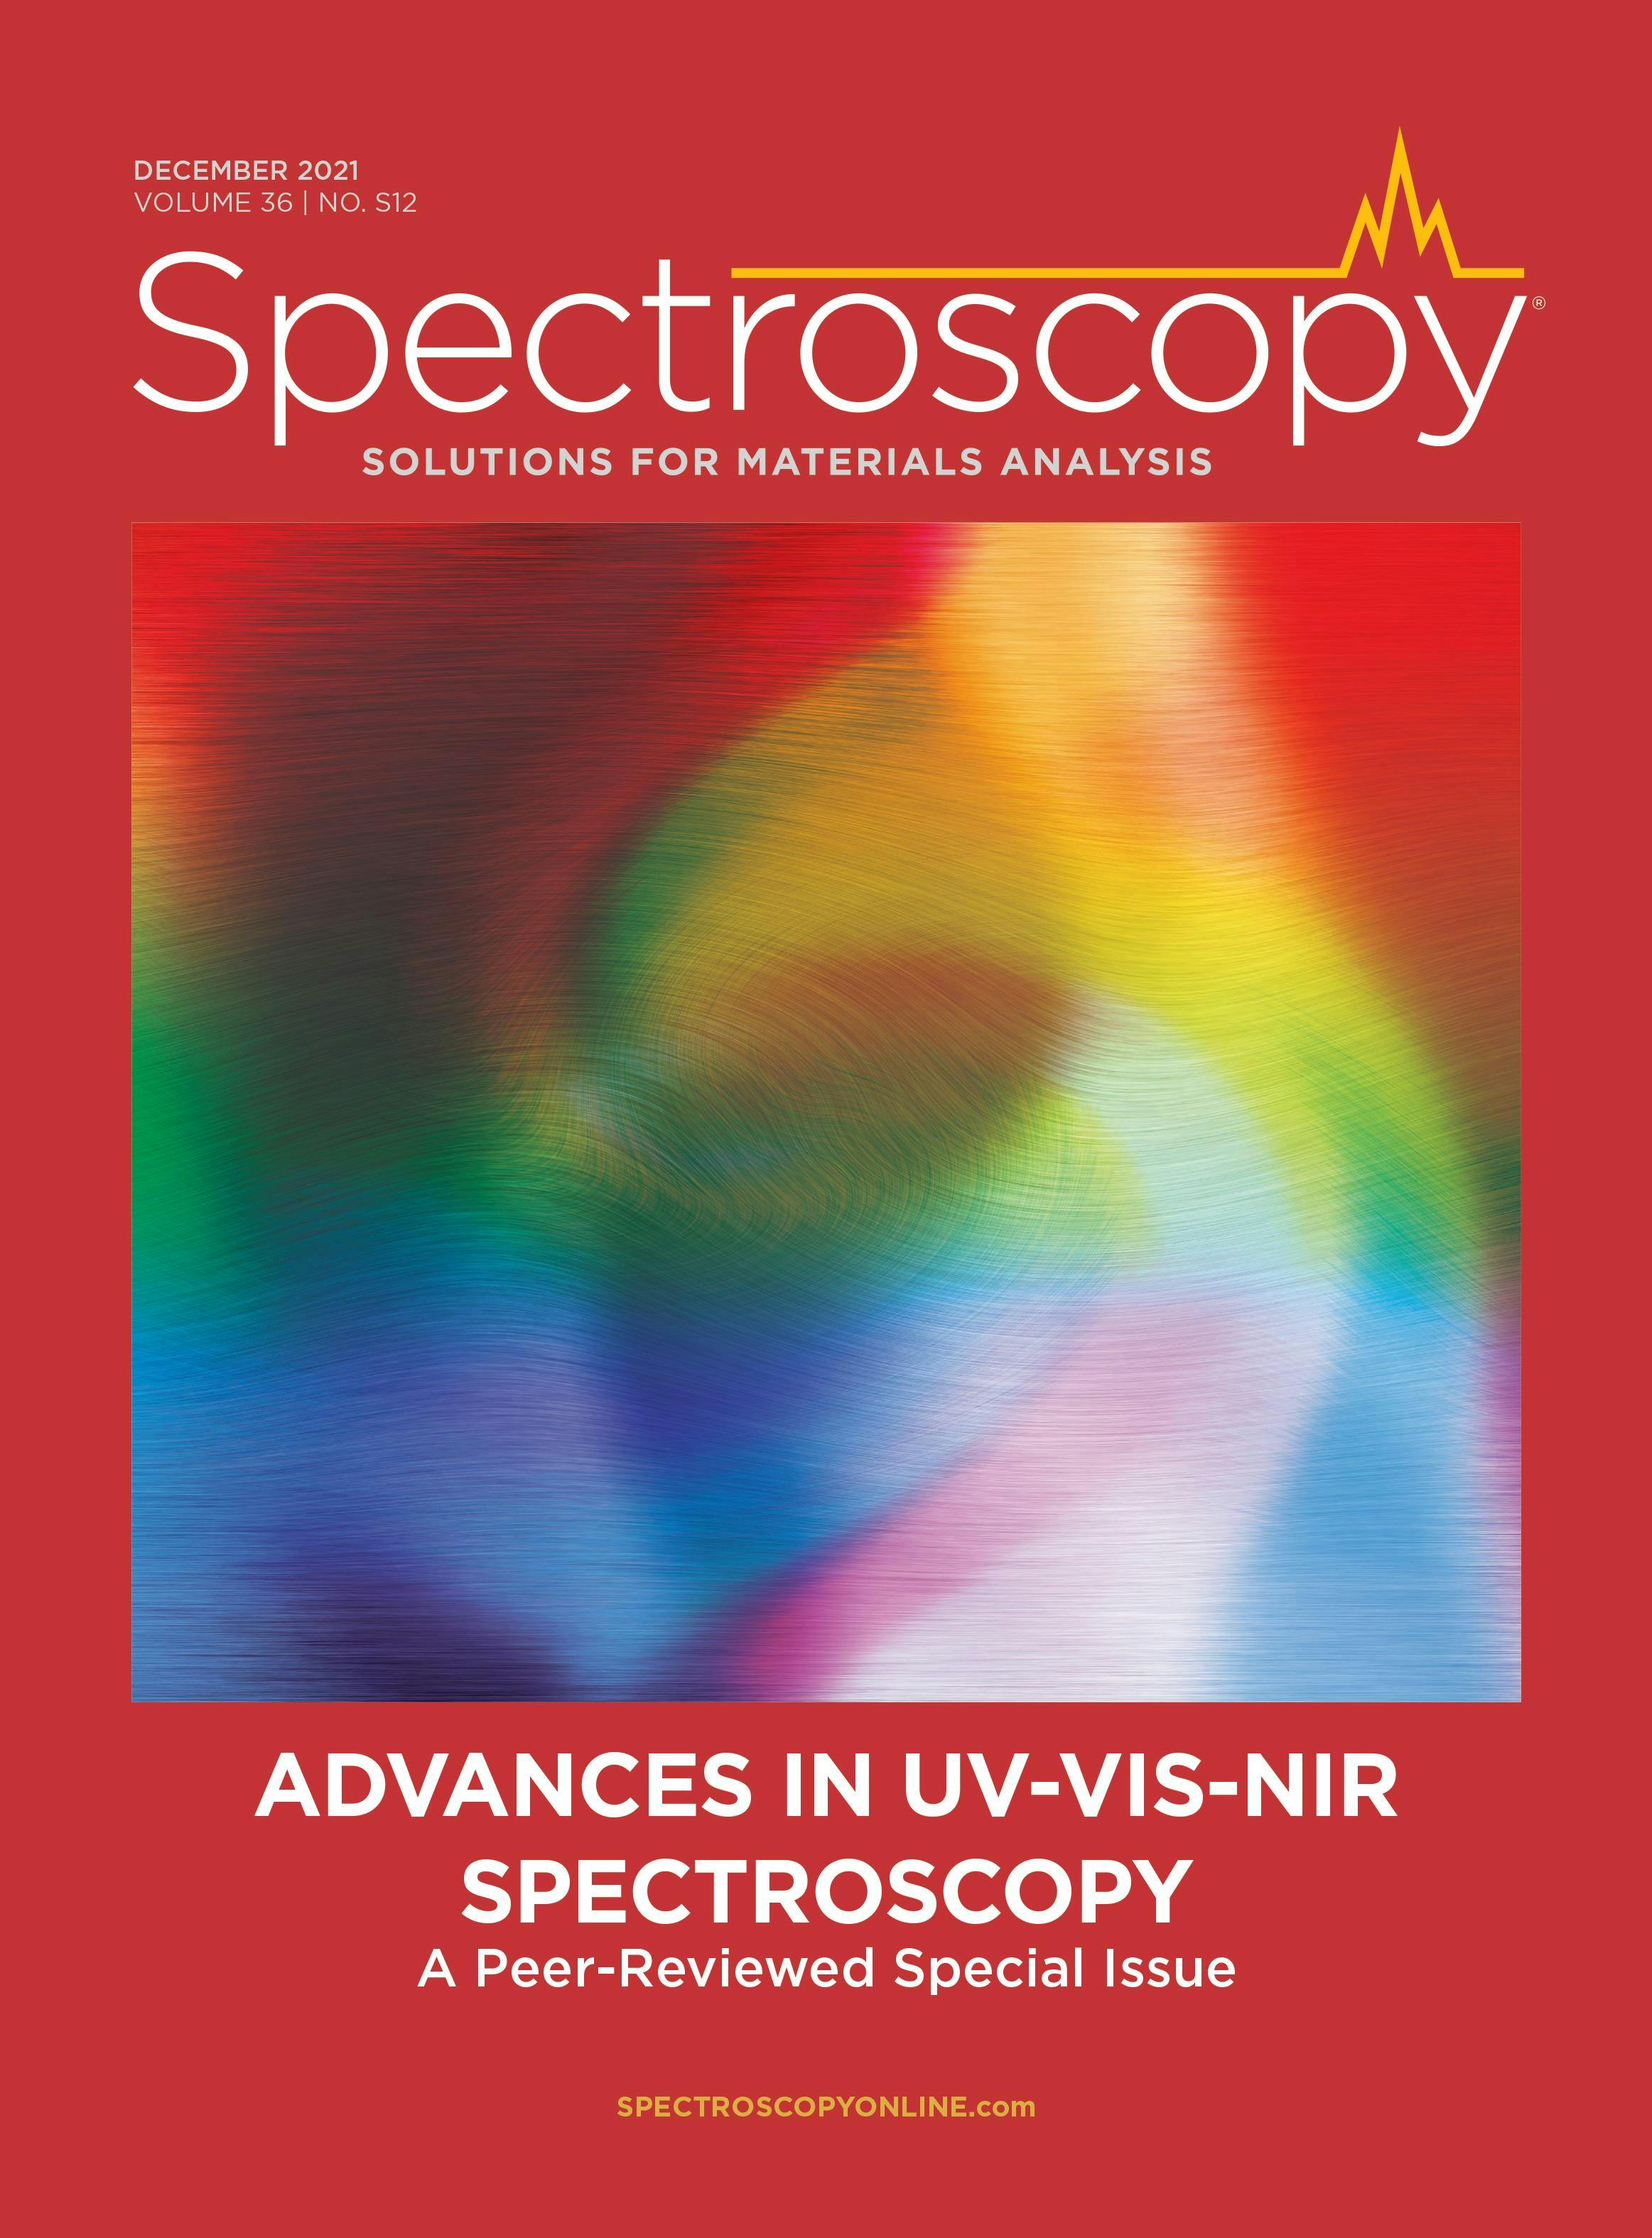 Advances in UV-vis-NIR Spectroscopy